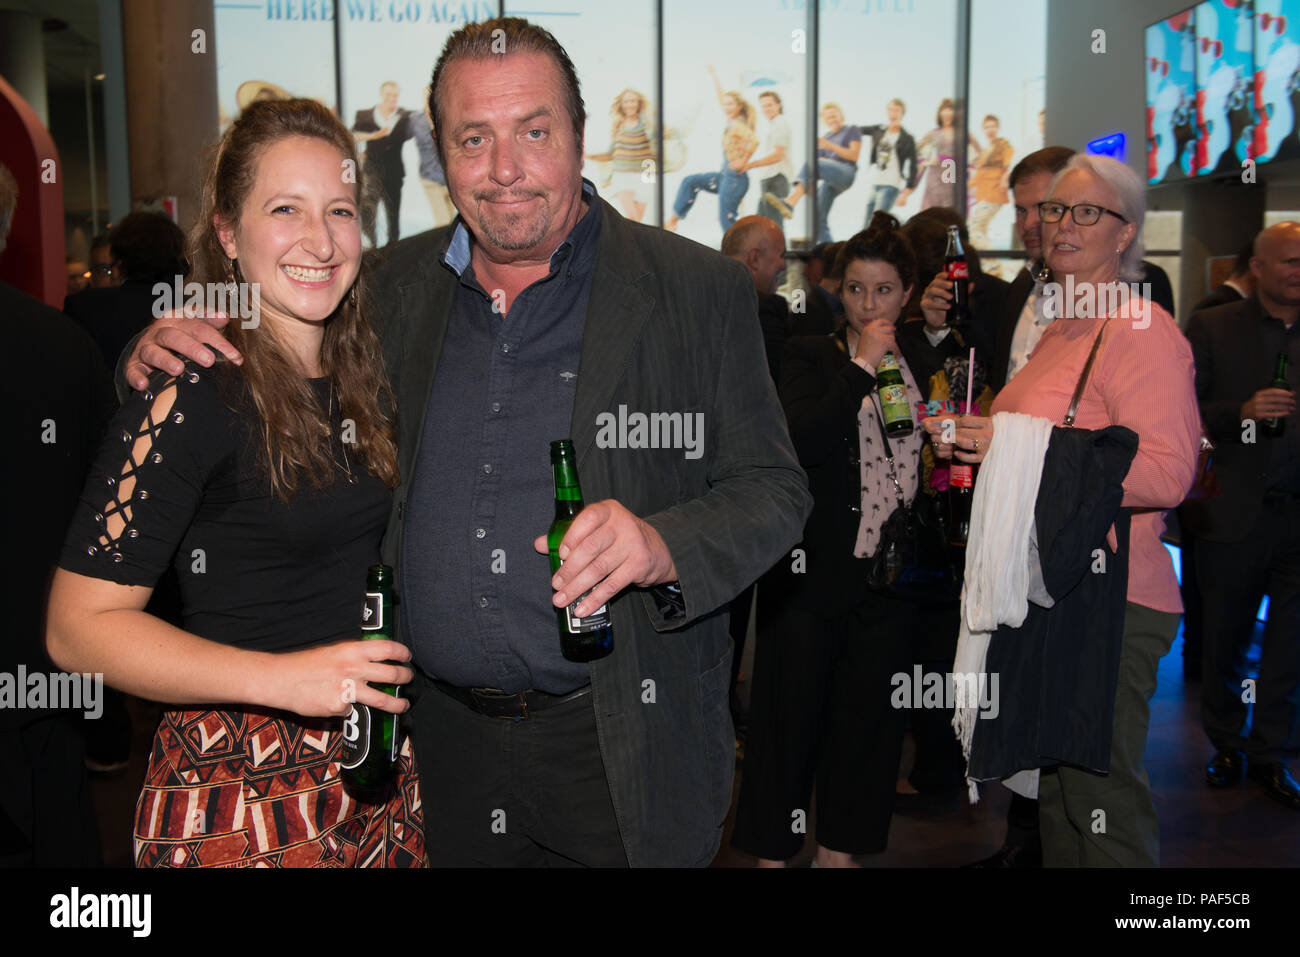 Andreas acteur Giebel avec fille Sarah vu à la cérémonie d'existe le Filmfest München 2018 Banque D'Images